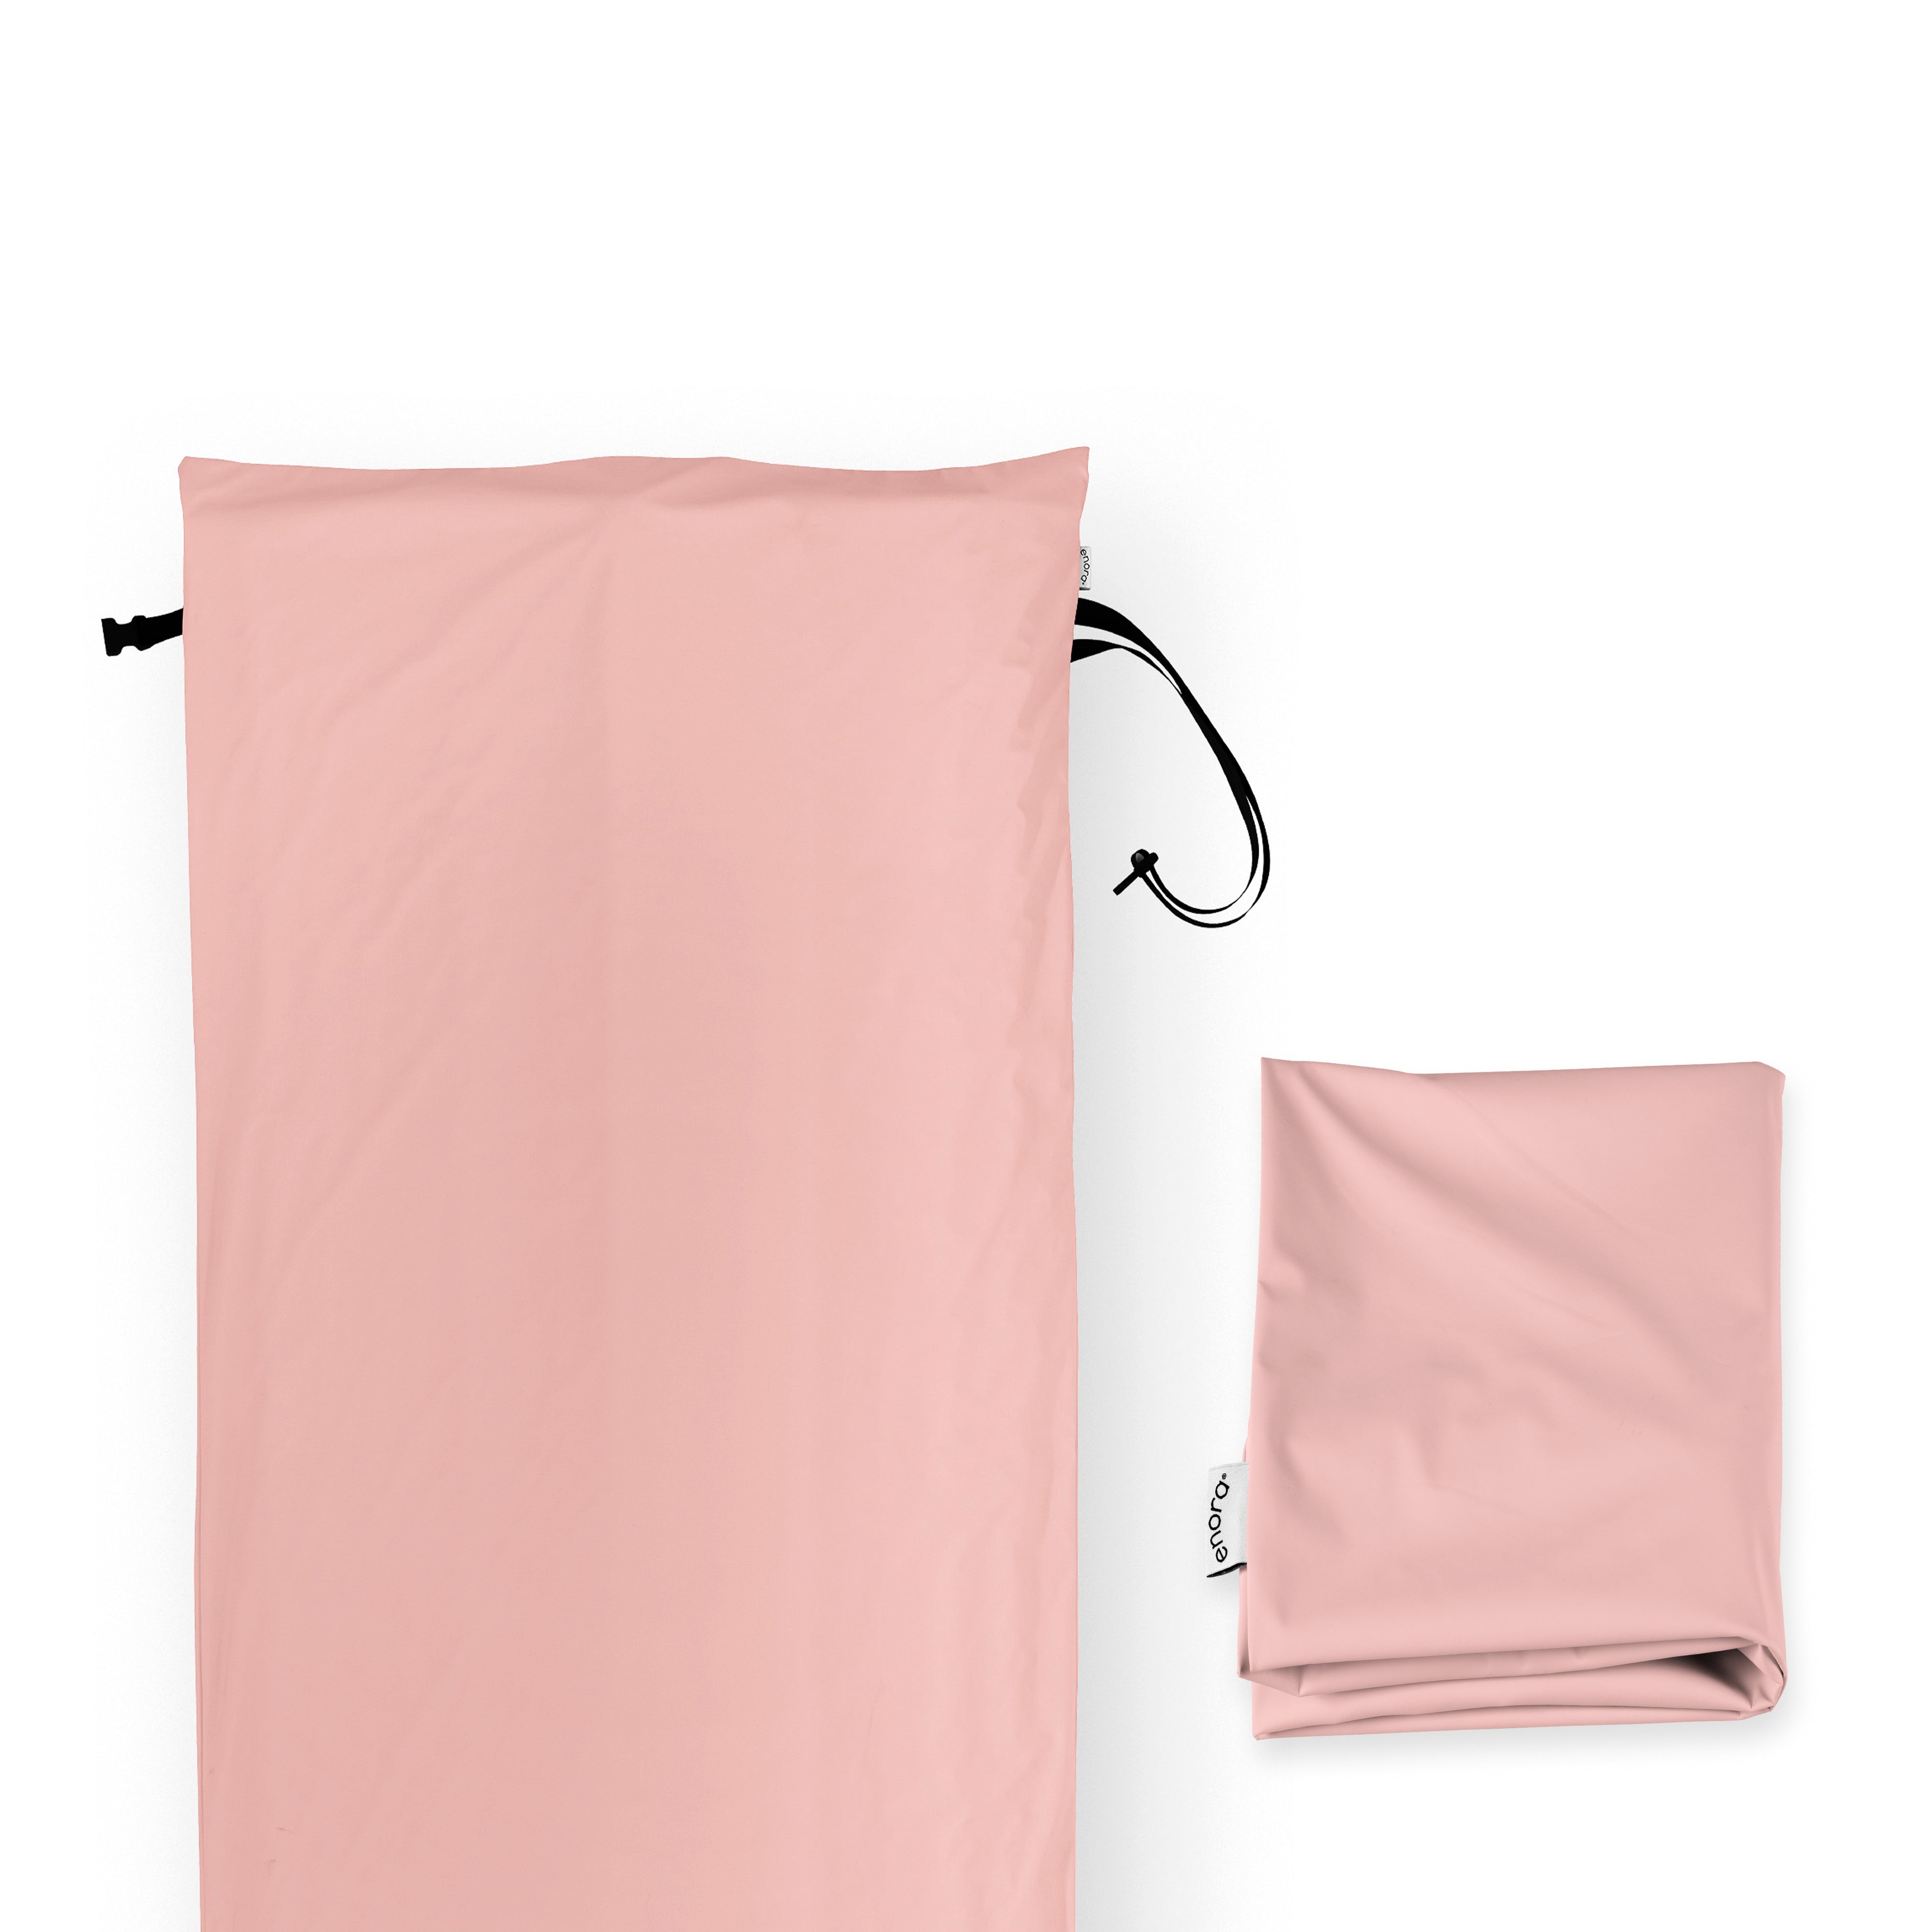 Enora® Air Sleeper Dual Cover Set